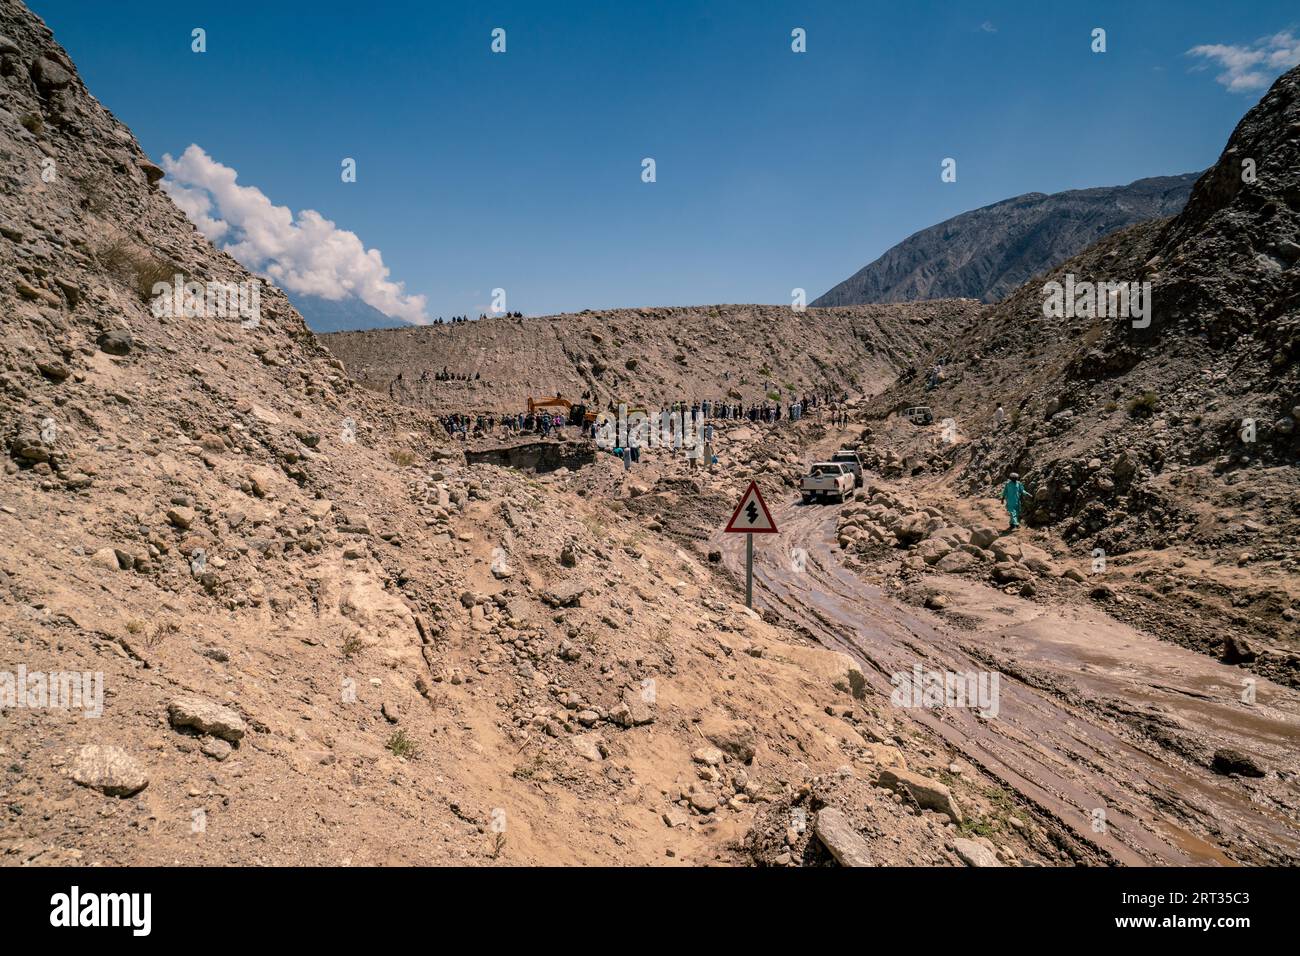 Route de Karakoram, Pakistan, 19 juillet 2018 : travaux de récupération après un glissement de terrain détruit la route dans les montagnes de Karakoram au Pakistan. Editorial illustratif Banque D'Images